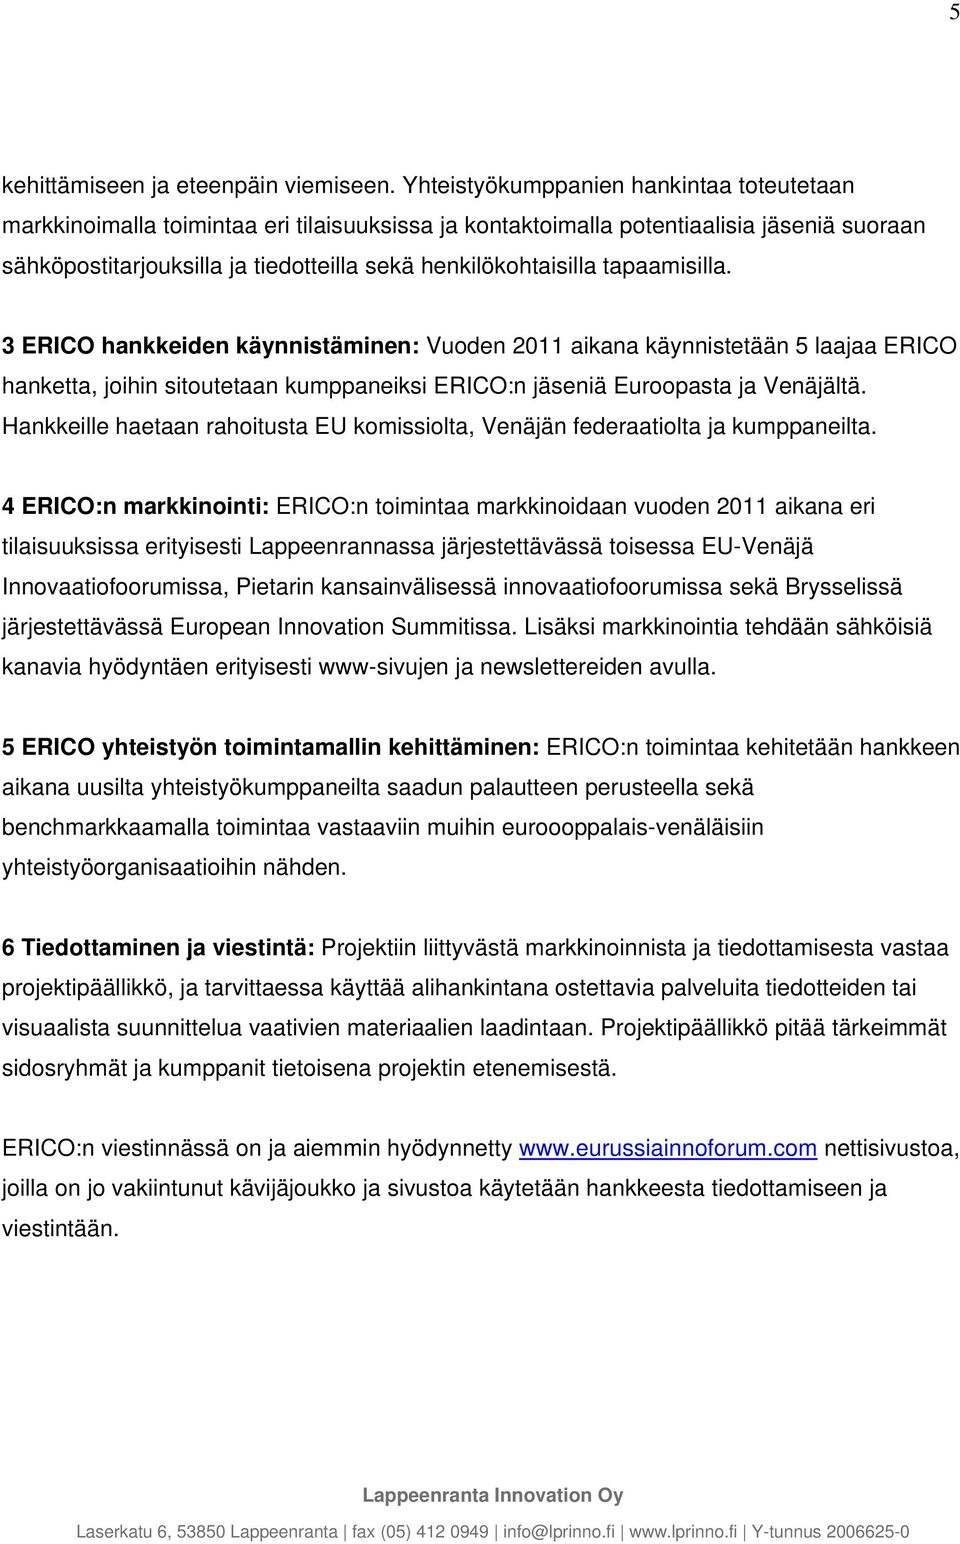 tapaamisilla. 3 ERICO hankkeiden käynnistäminen: Vuoden 2011 aikana käynnistetään 5 laajaa ERICO hanketta, joihin sitoutetaan kumppaneiksi ERICO:n jäseniä Euroopasta ja Venäjältä.